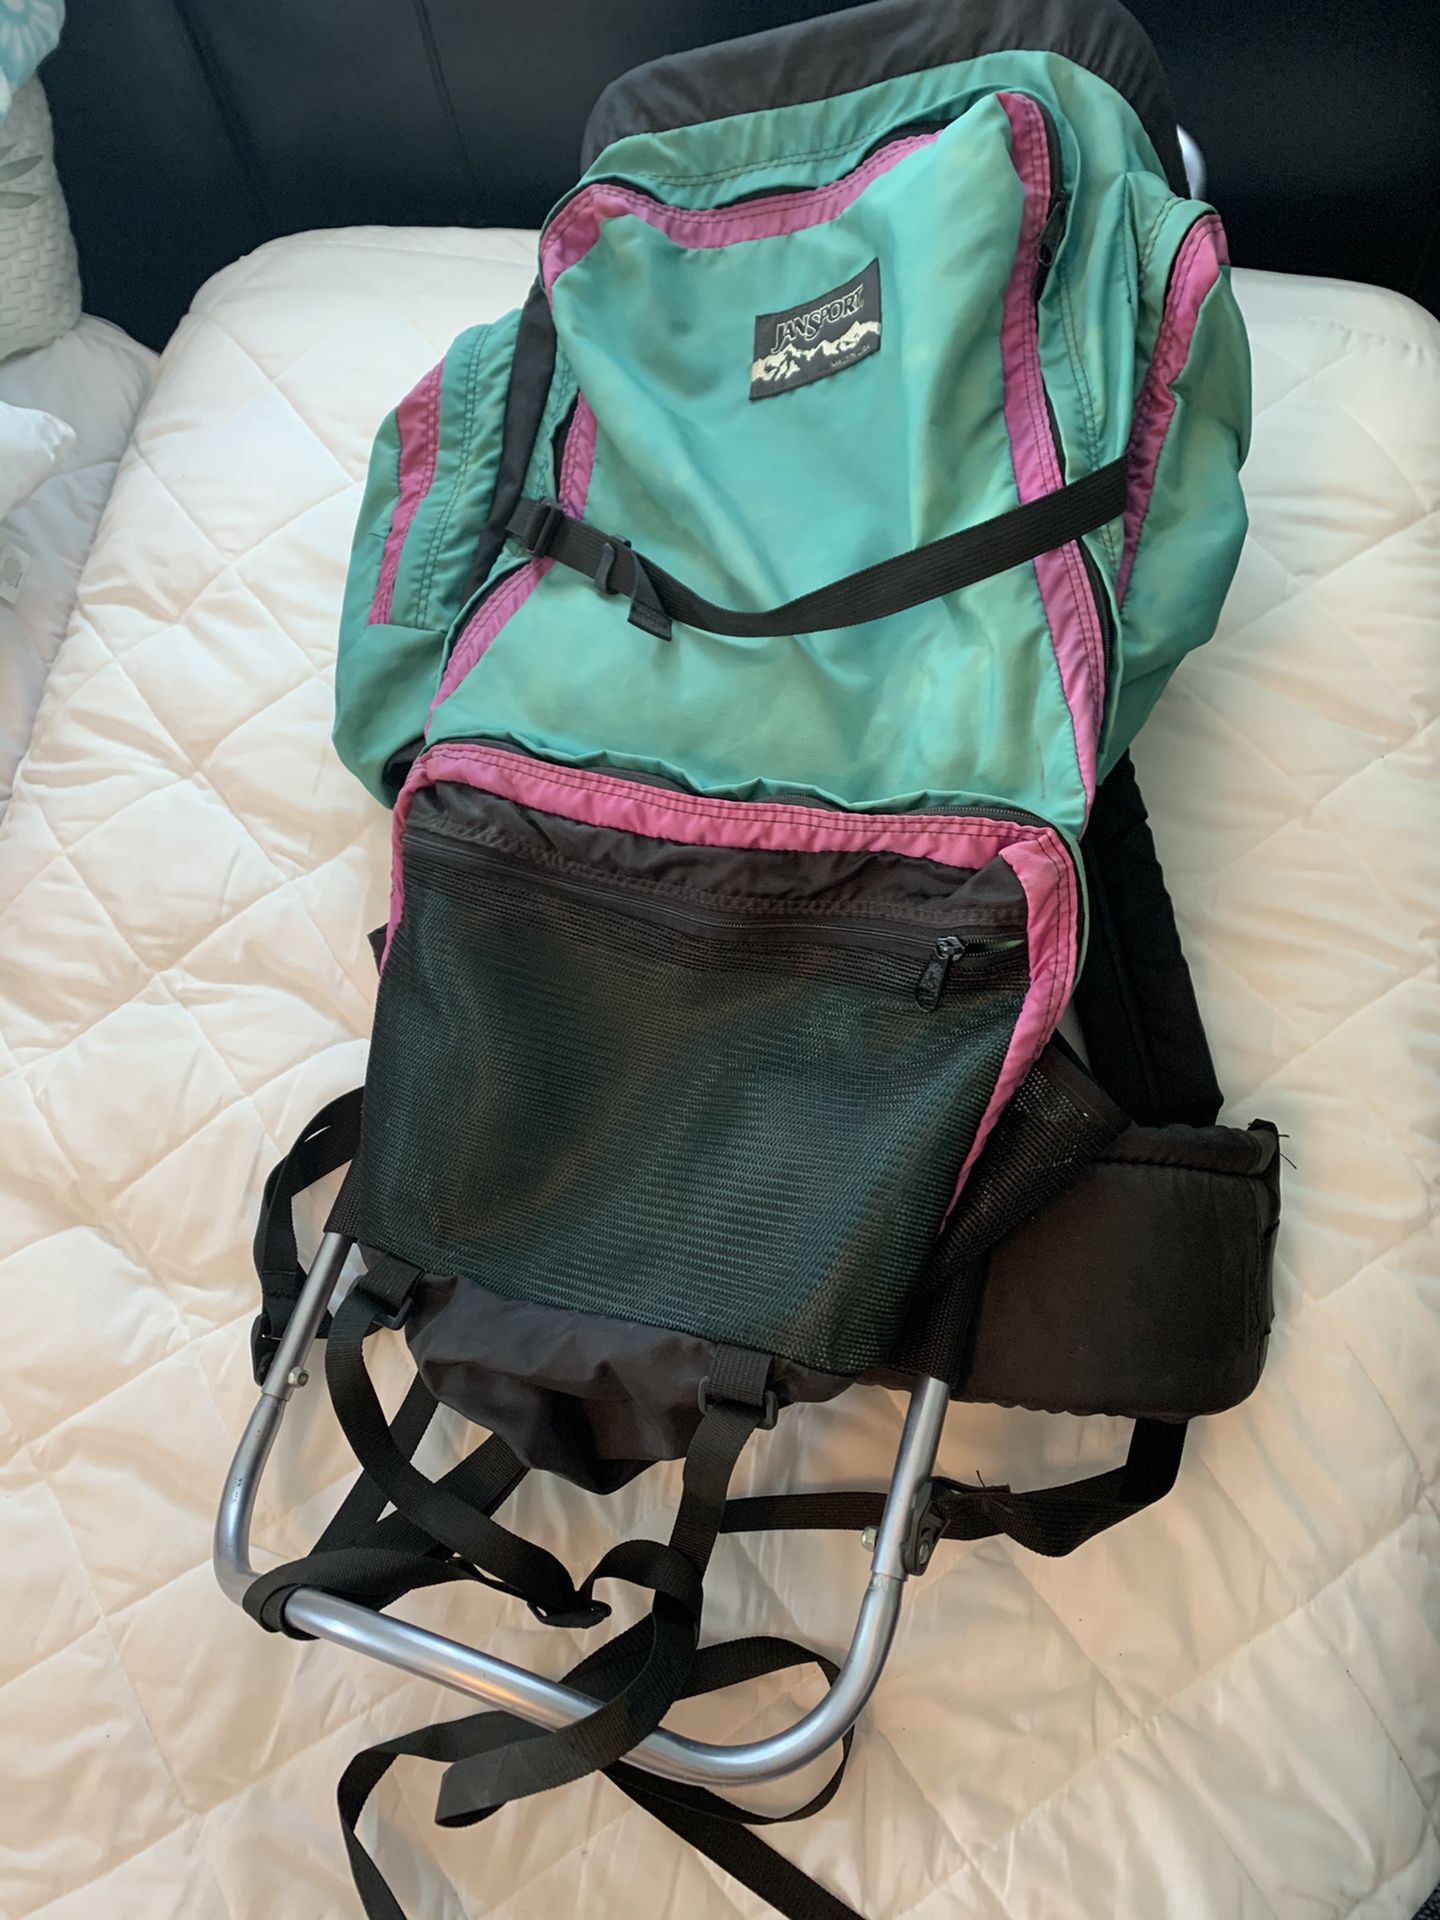 VTG Jansport External Frame Backpack Made In USA Hiking Camping Green Pink